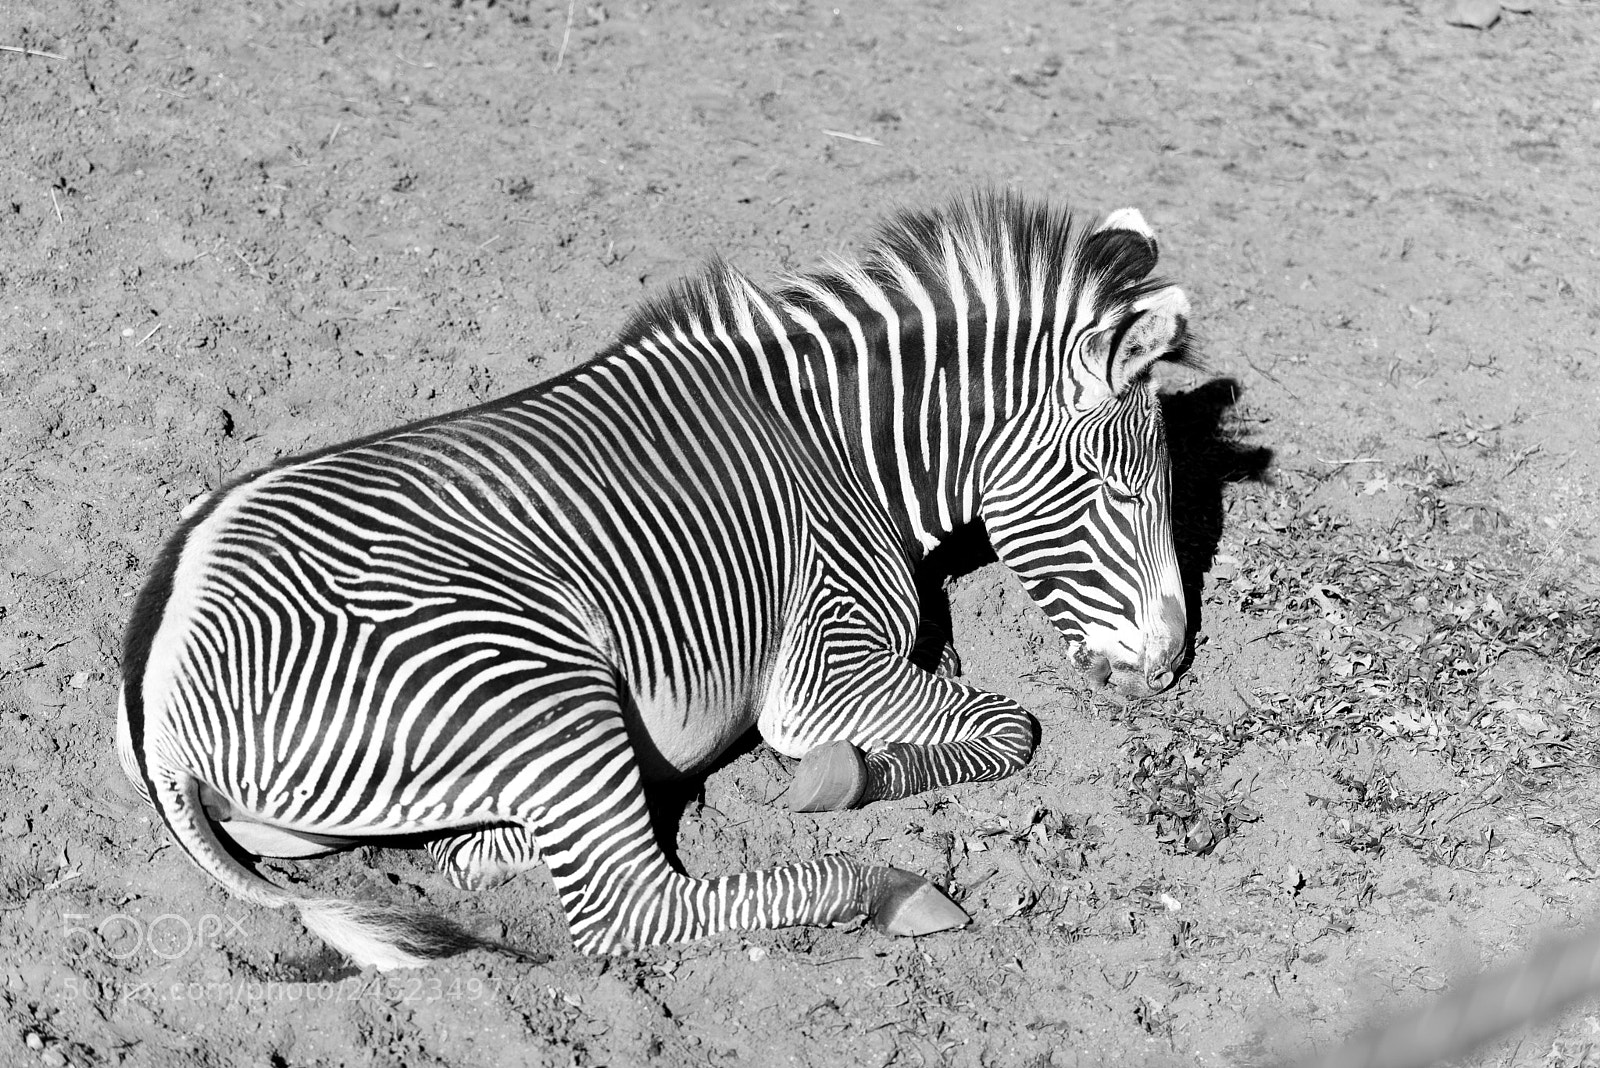 Nikon D750 sample photo. Large zebra laying on photography